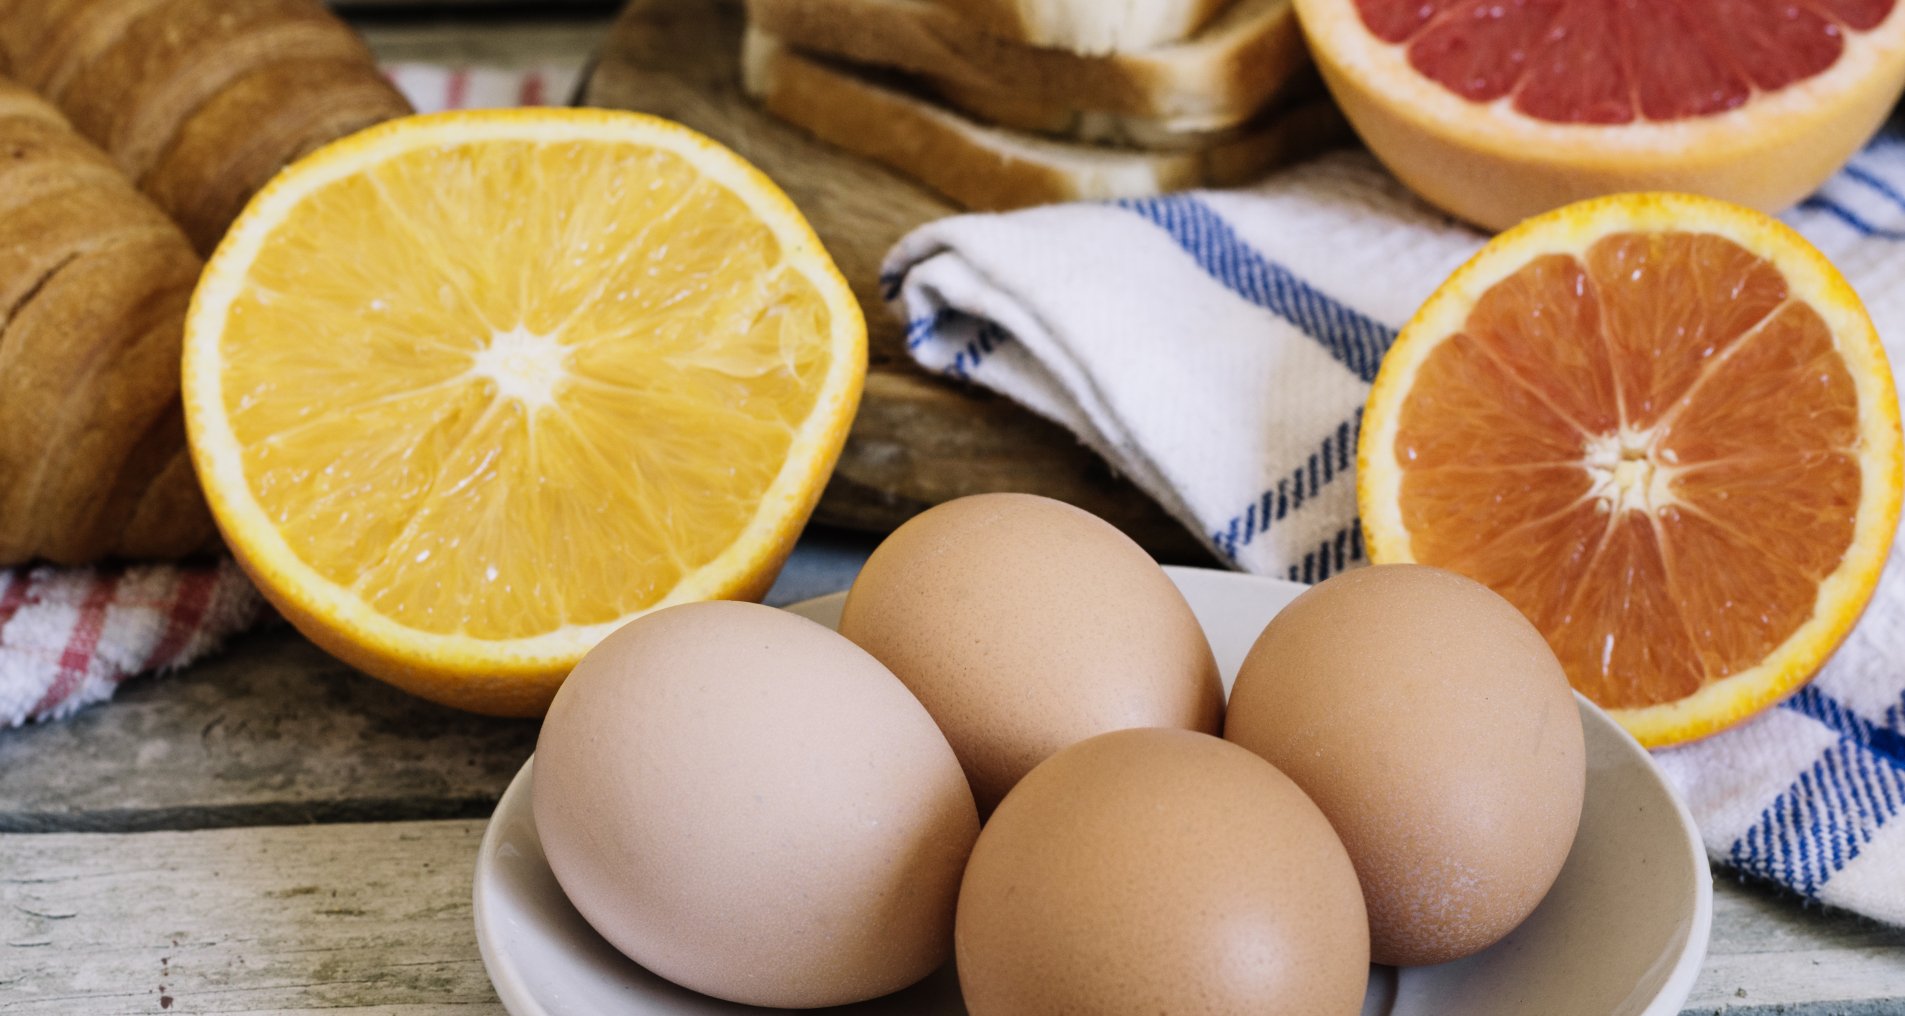 Эликсир из грейпфрута и меда поможет похудеть и укрепит здоровье